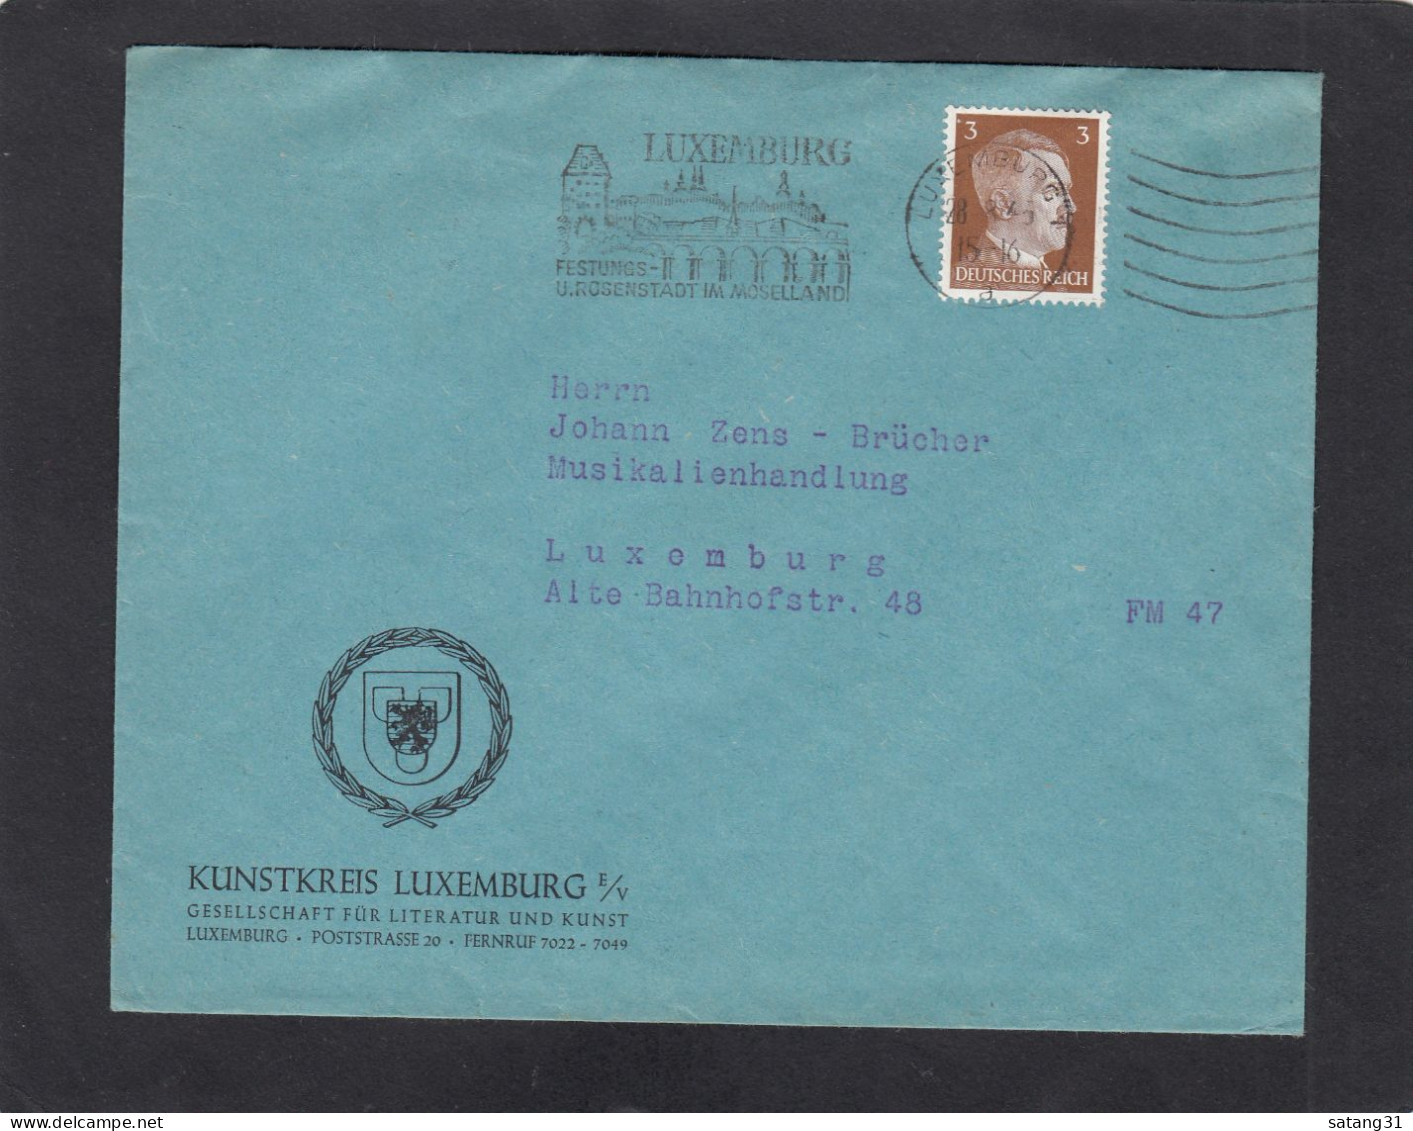 KUNSTKREIS LUXEMBURG,GESELLSCHAFT FÜR LITTERATUR UND KUNST,LUXEMBURG. - 1940-1944 German Occupation